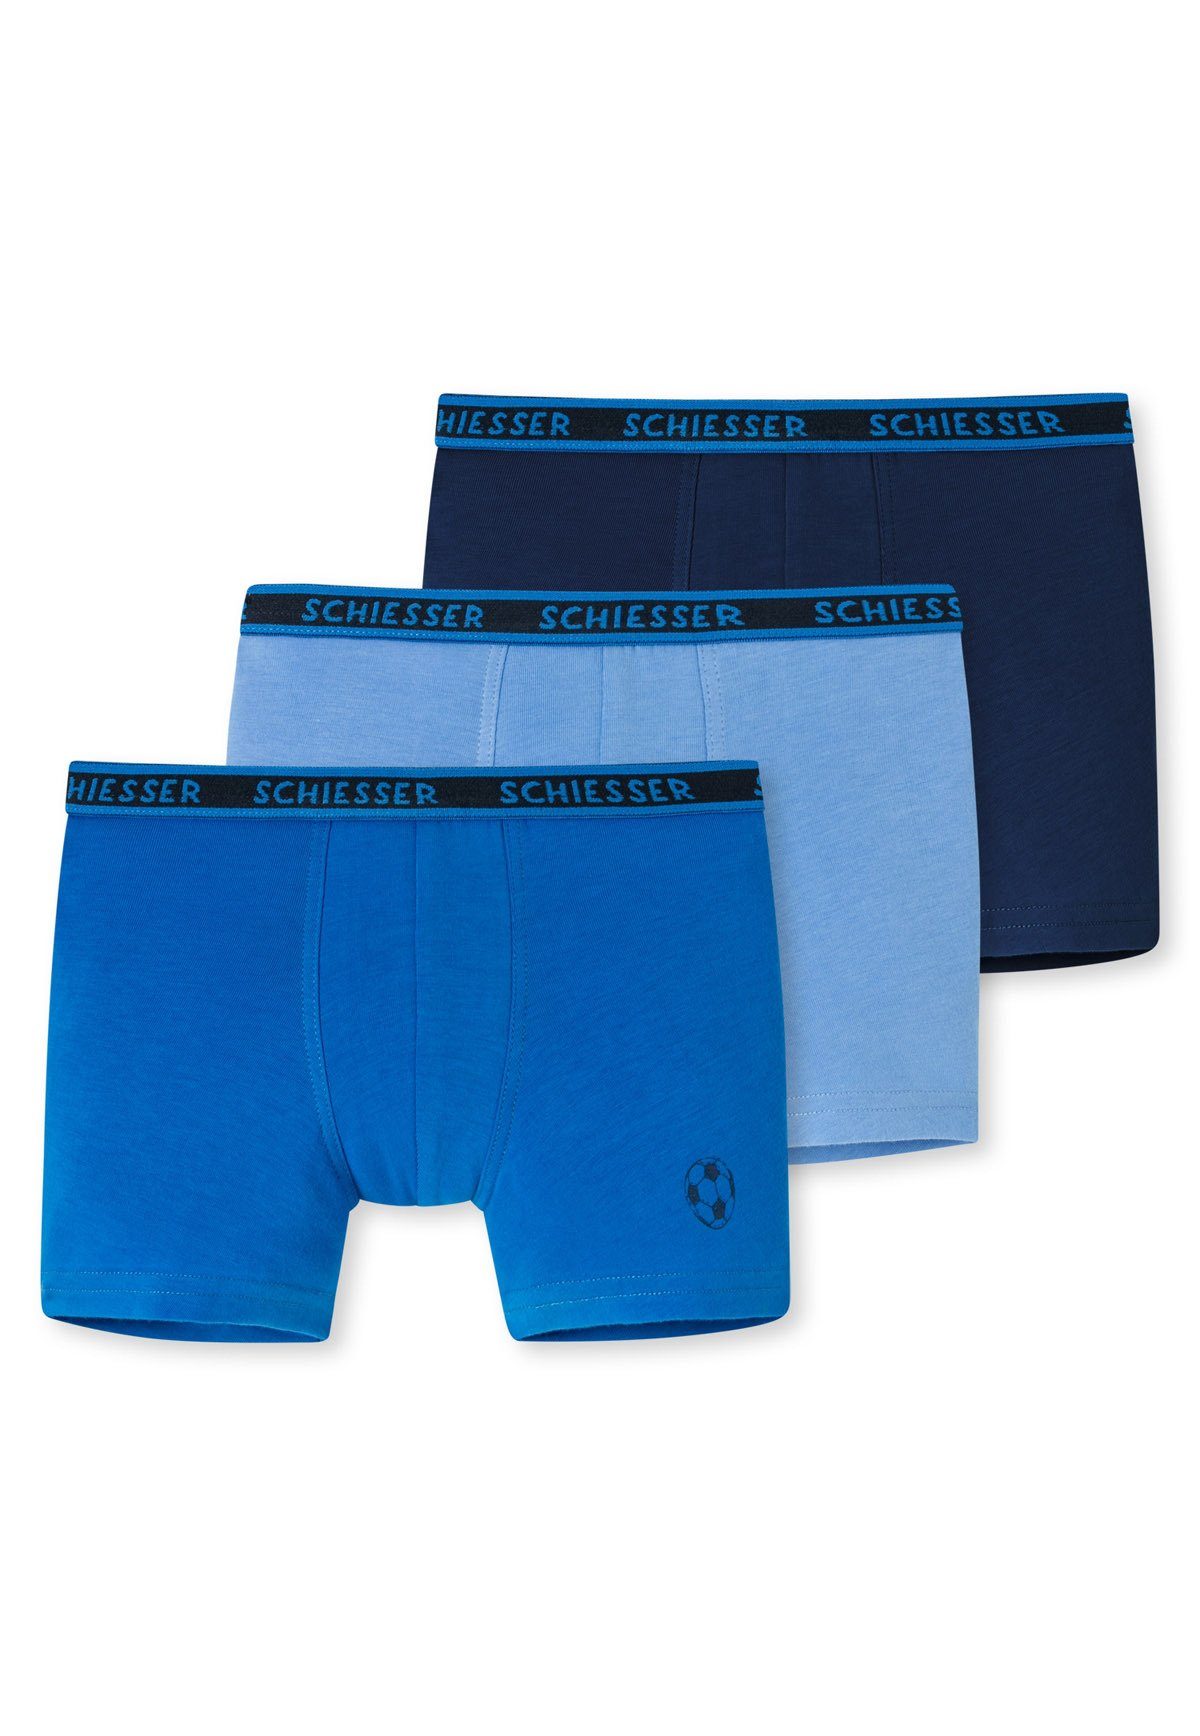 Schiesser Boxer Jungen Shorts 3er (2) Pack - Unterhose, Shorts Hip Hellblau/Blau/Dunkelblau